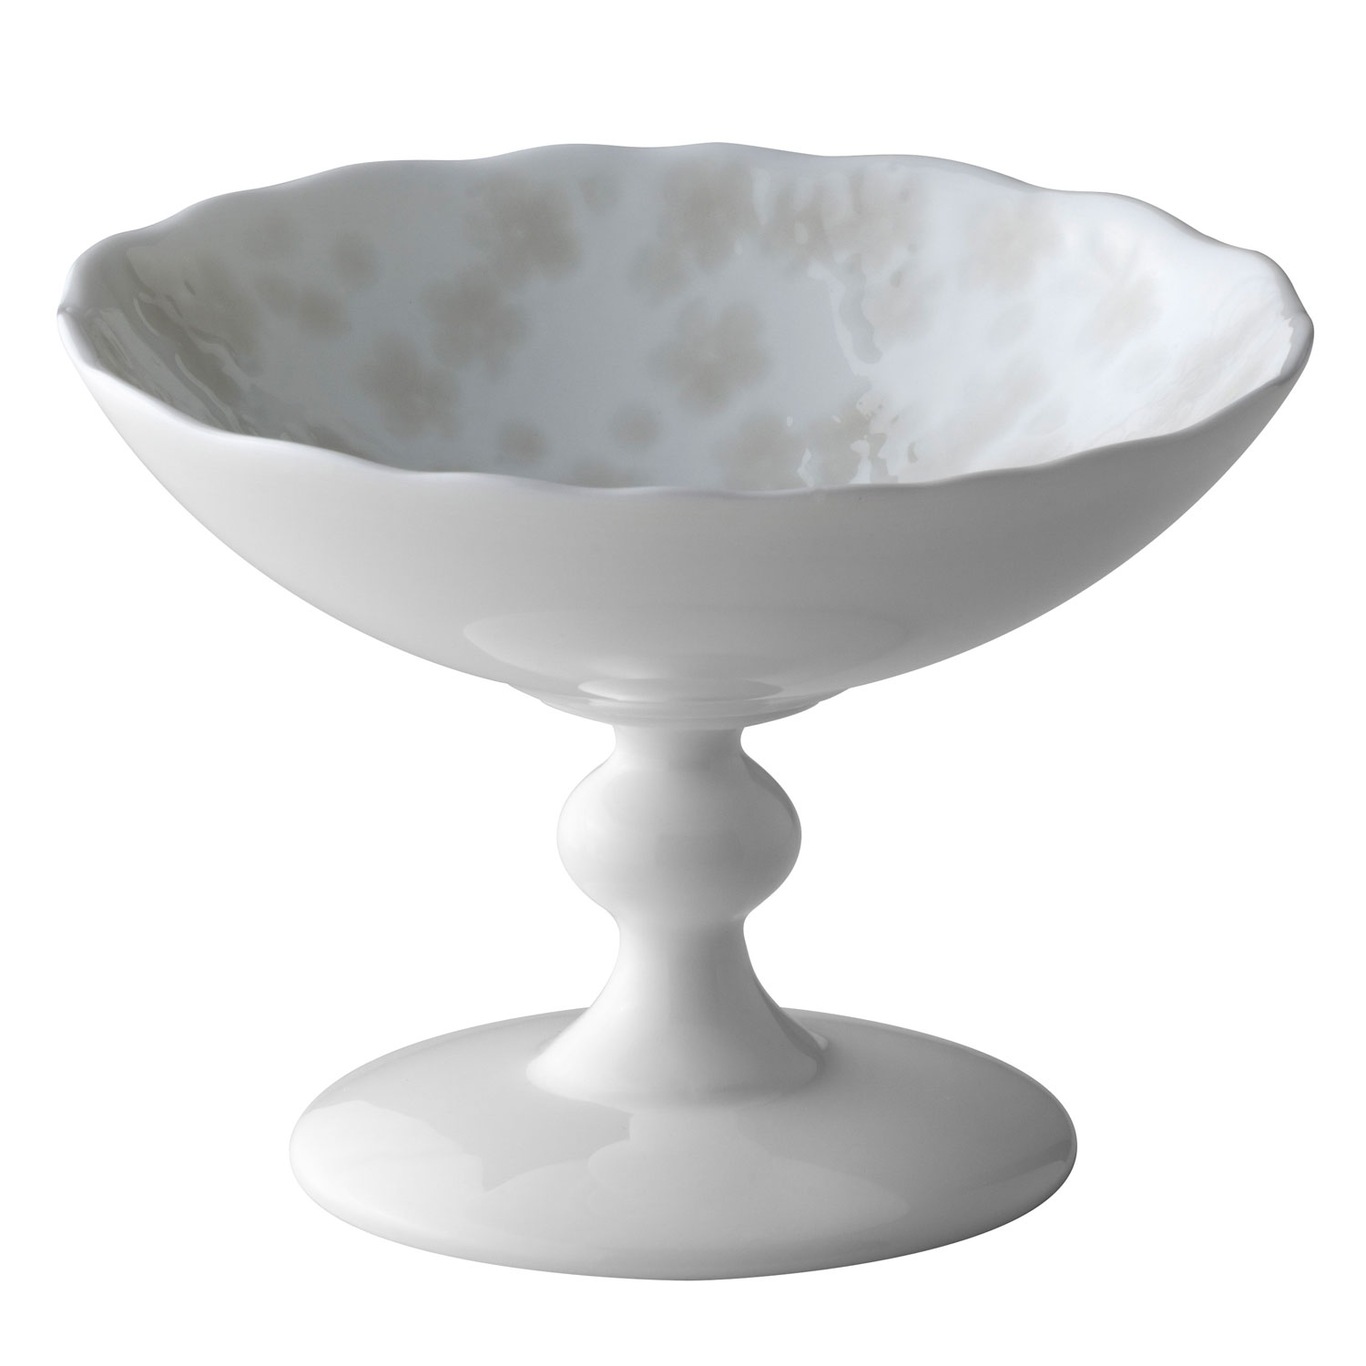 Slåpeblom Bowl With Foot 12 cm, Warm Grey